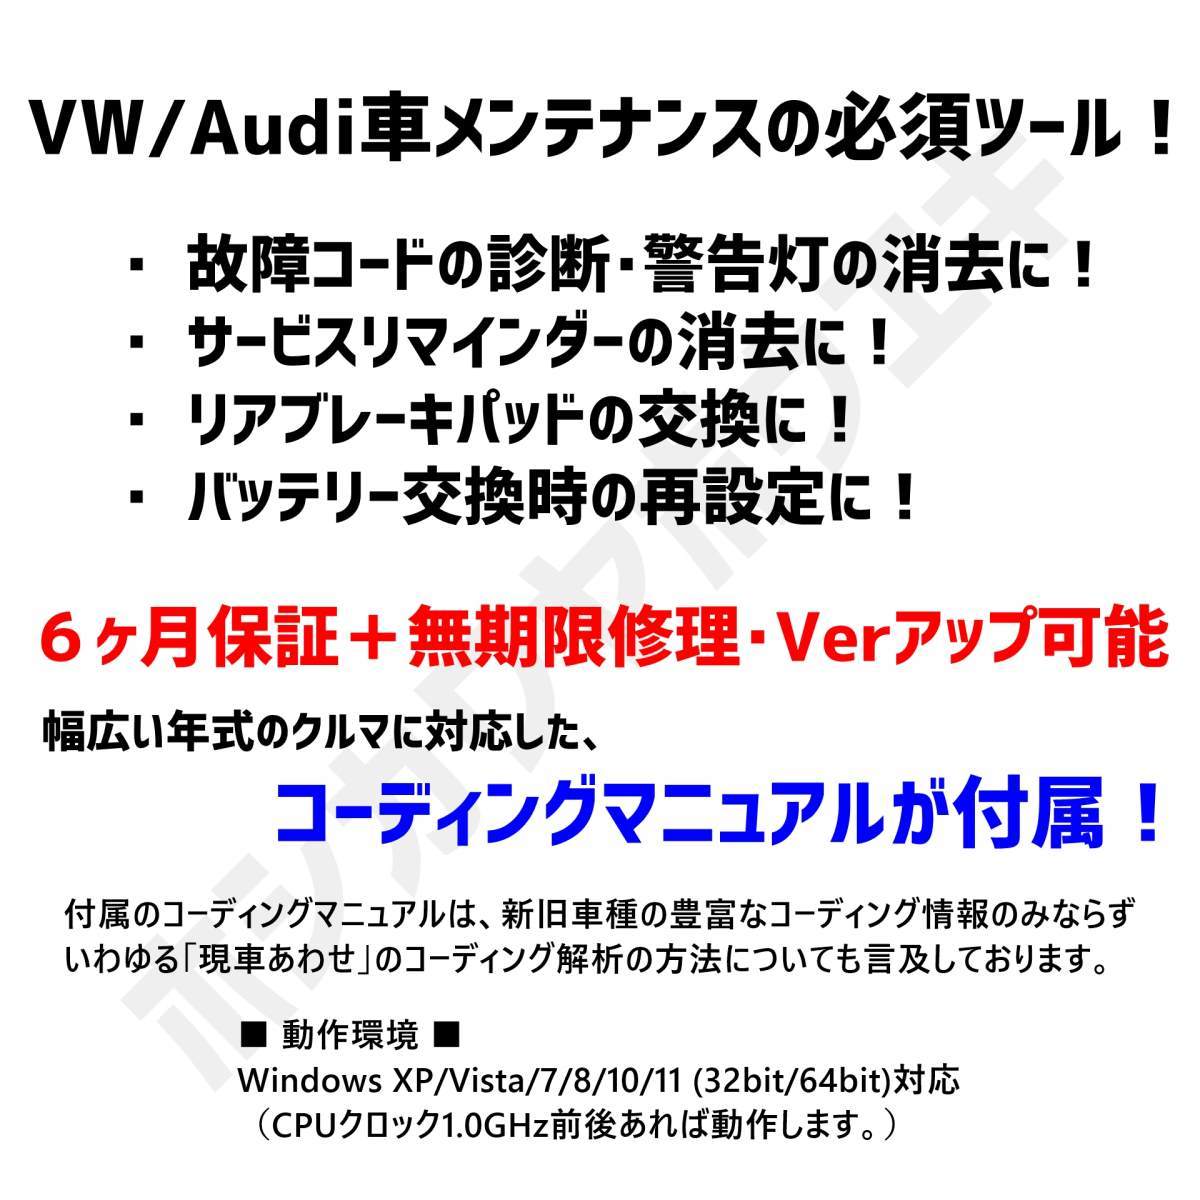 ◇ 【最新版23.11.0・保証付・送料無料】 VCDS 互換ケーブル HEX-V2タイプ 新コーディングマニュアル付 VW ゴルフ7.5 アウディ Audi A3 Q2_画像2